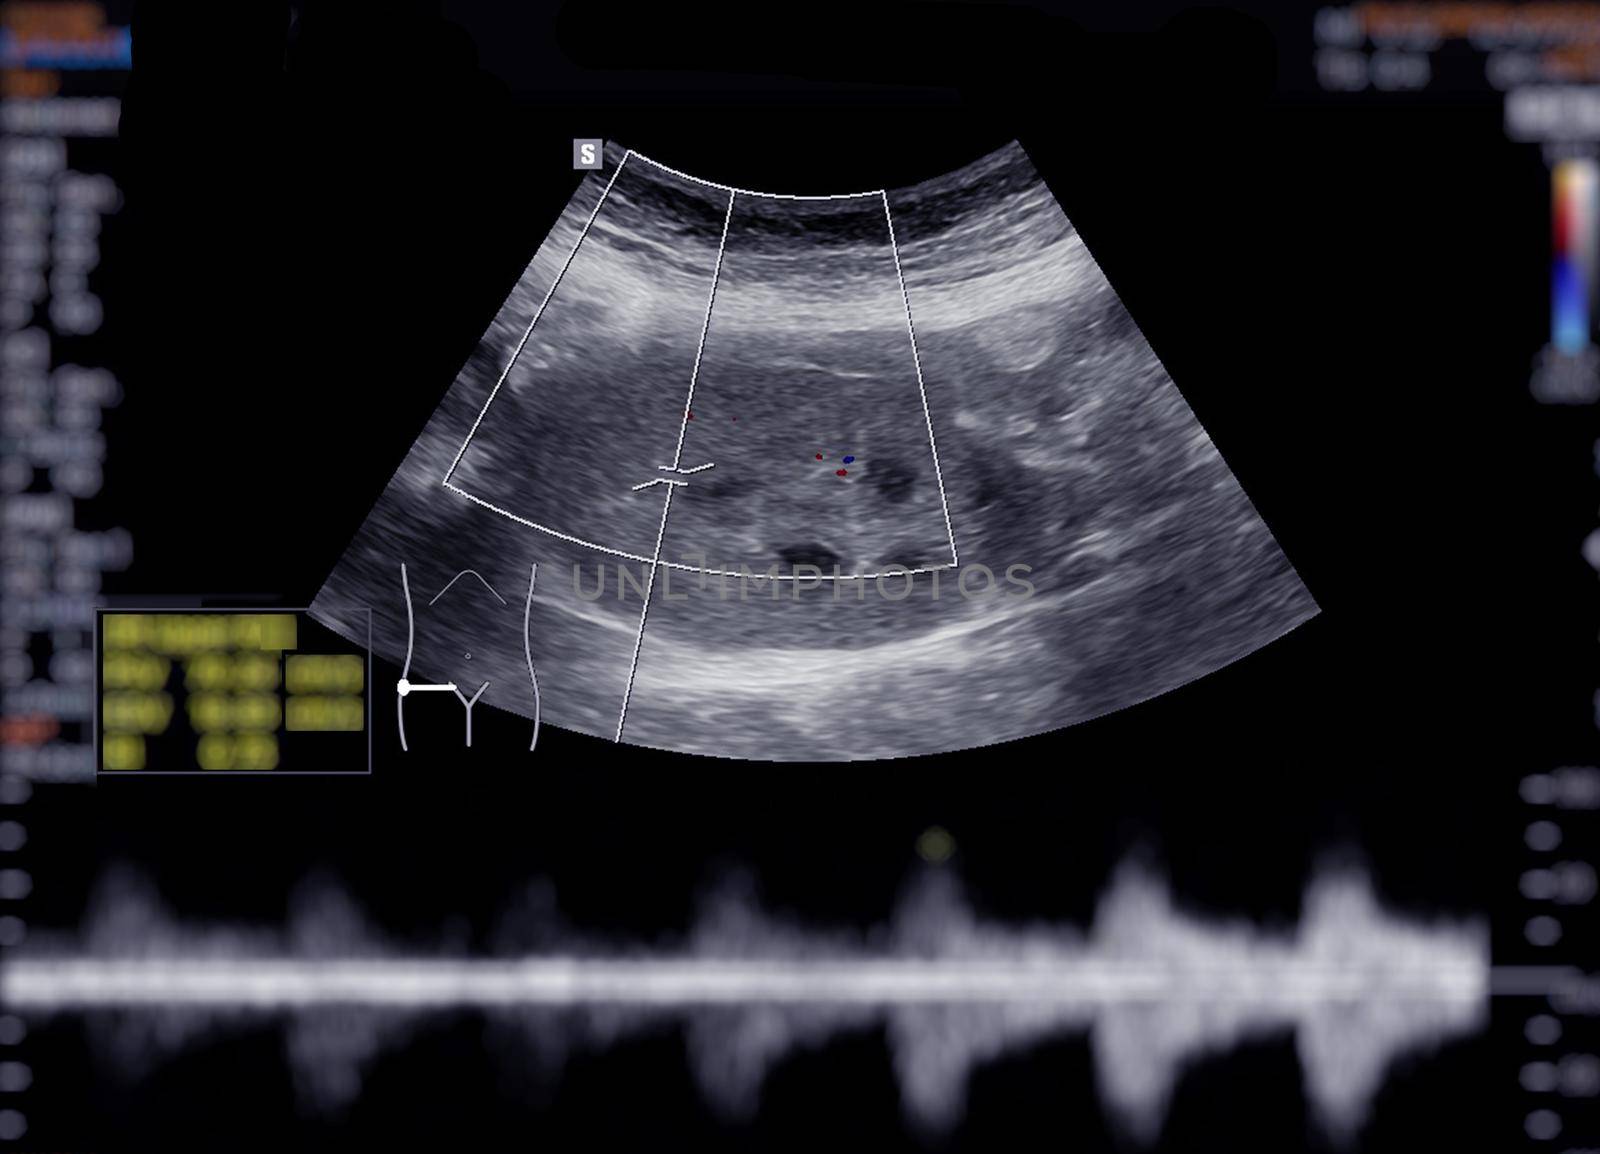 Ultrasound upper abdomen showing kidney.